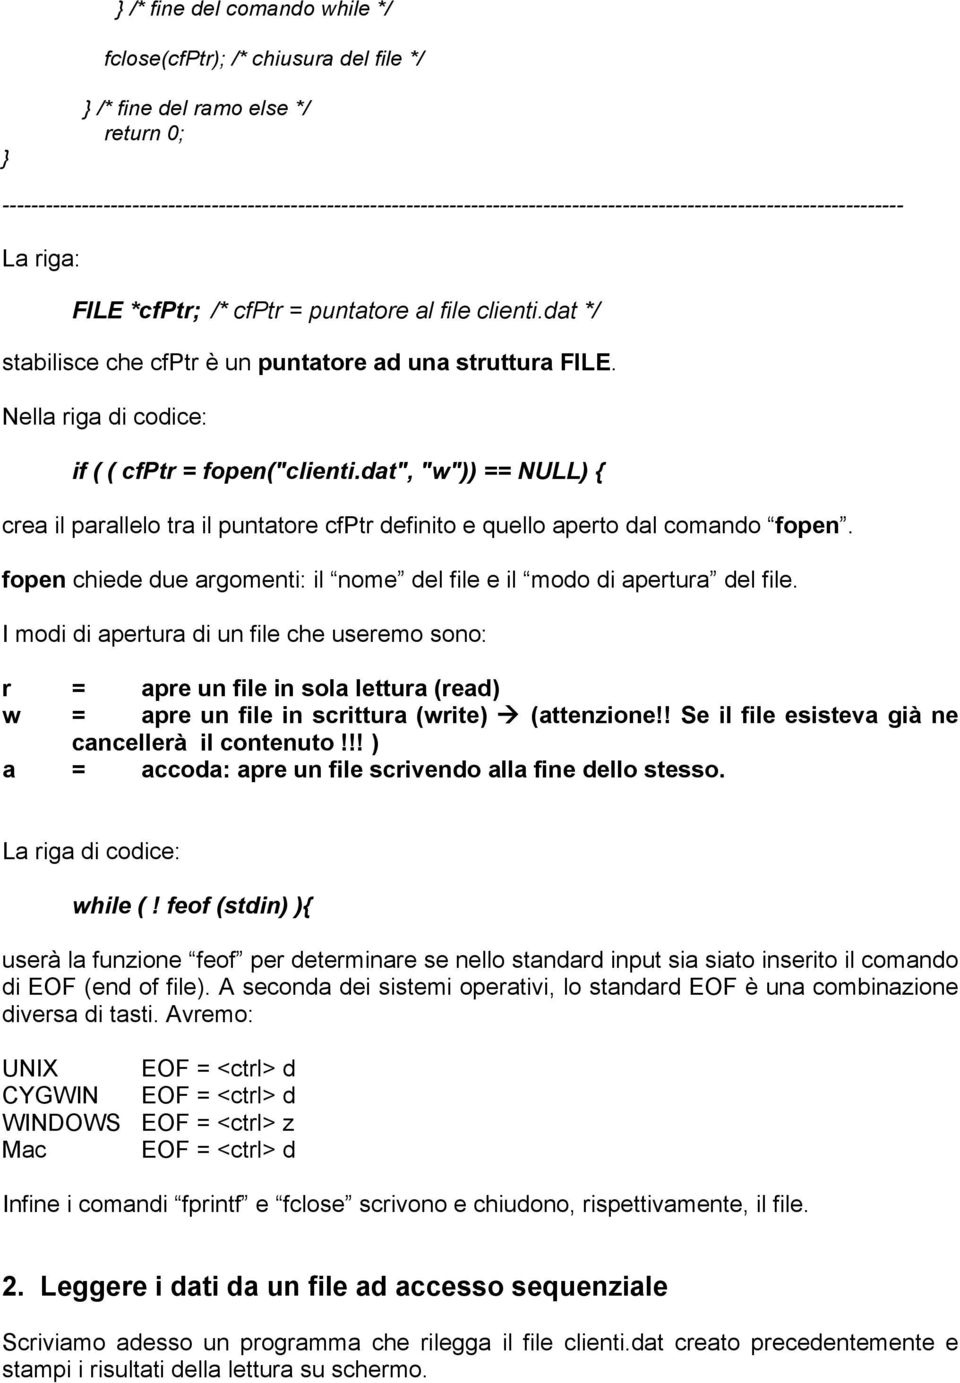 dat */ stabilisce che cfptr è un puntatore ad una struttura FILE. Nella riga di codice: if ( ( cfptr = fopen("clienti.